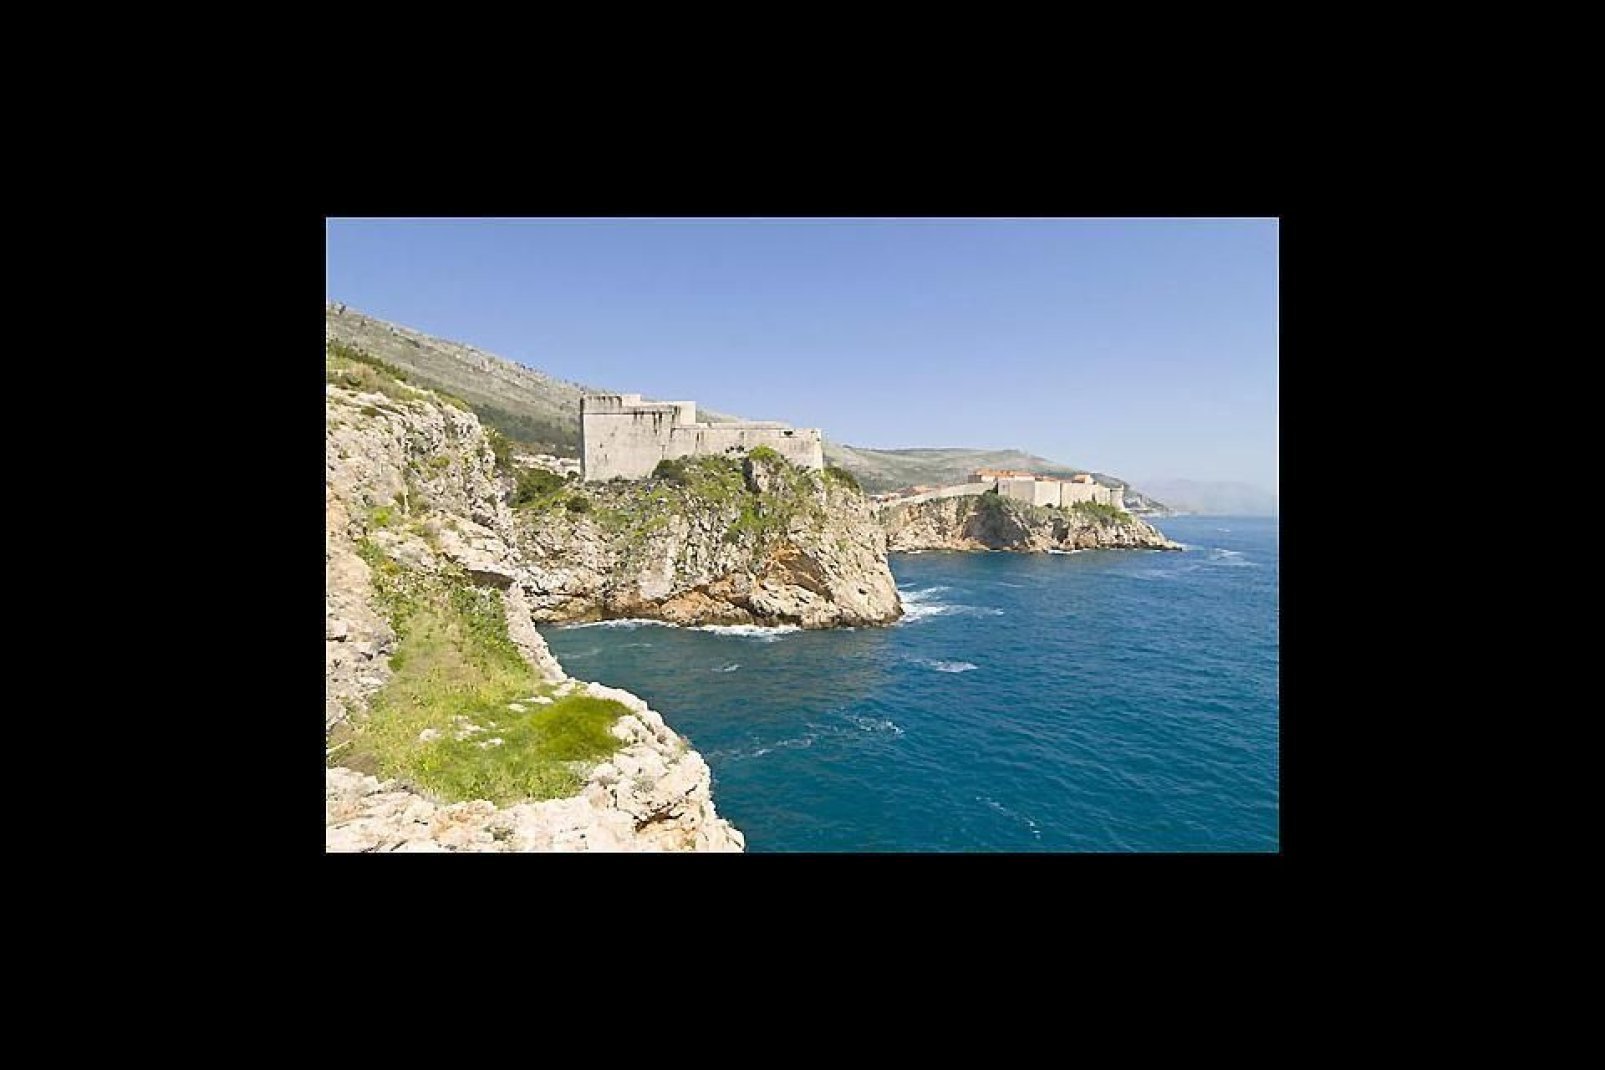 La formation rocheuse d'une partie de la côte de Dubrovnik.